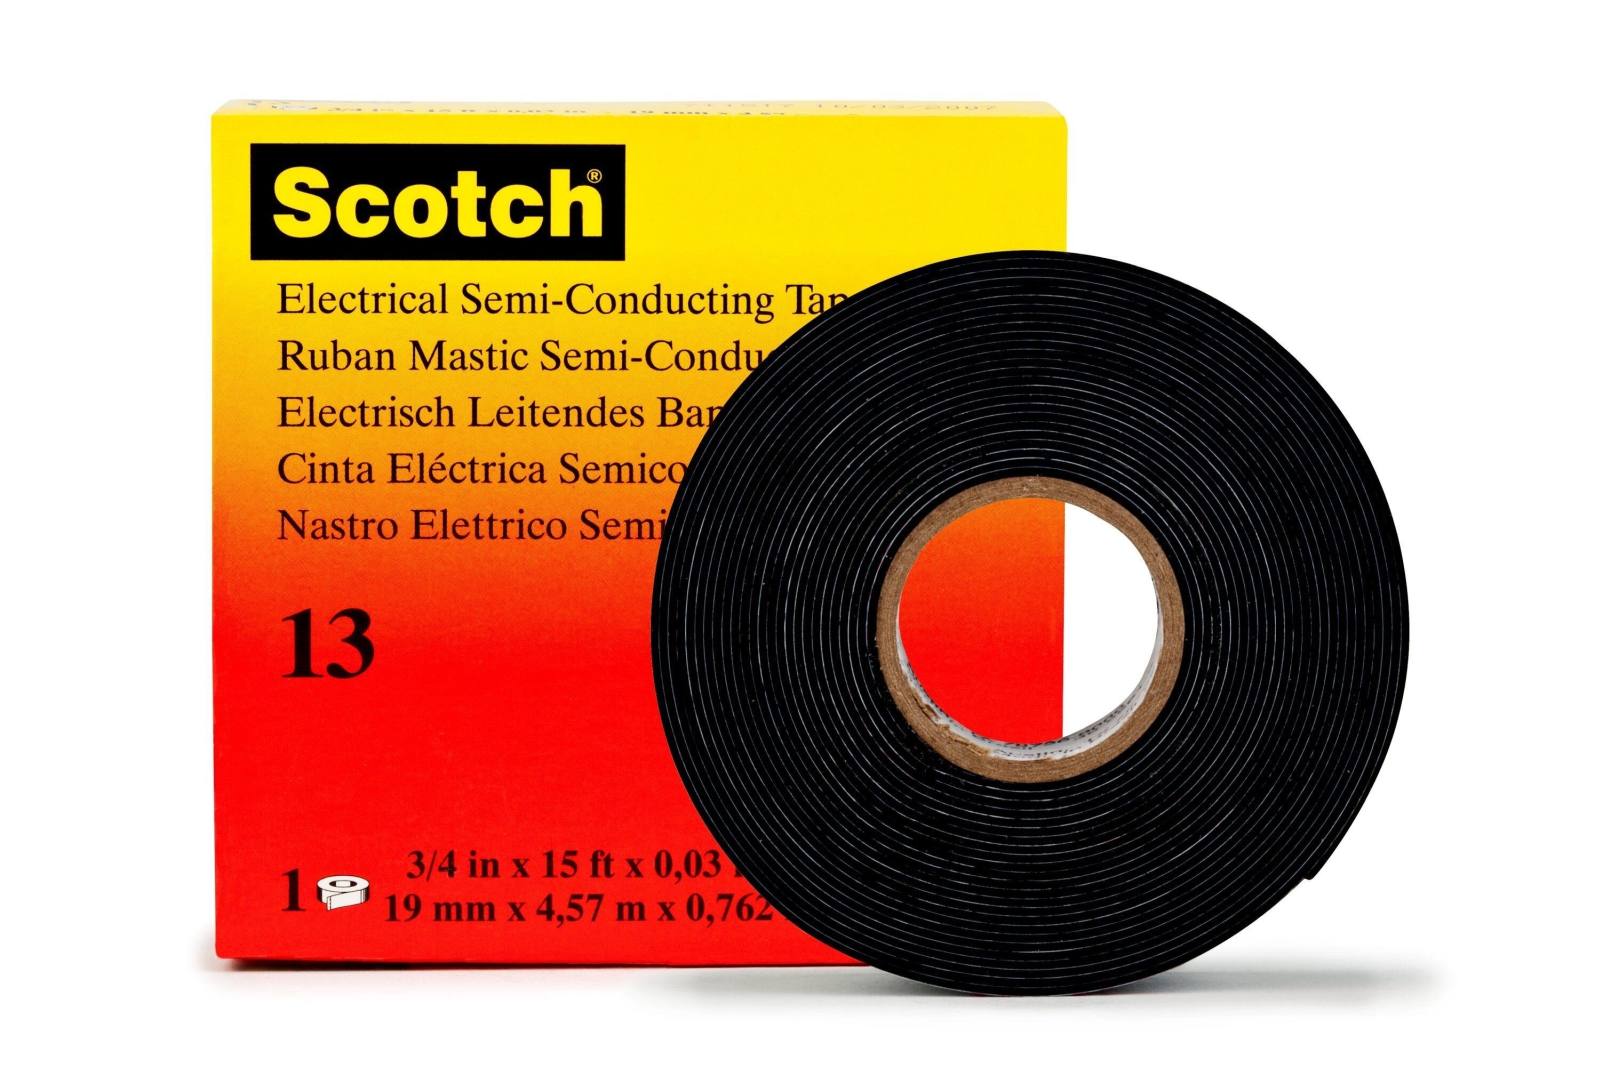  3M Scotch 13 etyleeni-propeeni-kumiteippi, itsetiivistyvä, johtava, musta, 19 mm x 4,5 m, 0,76 mm